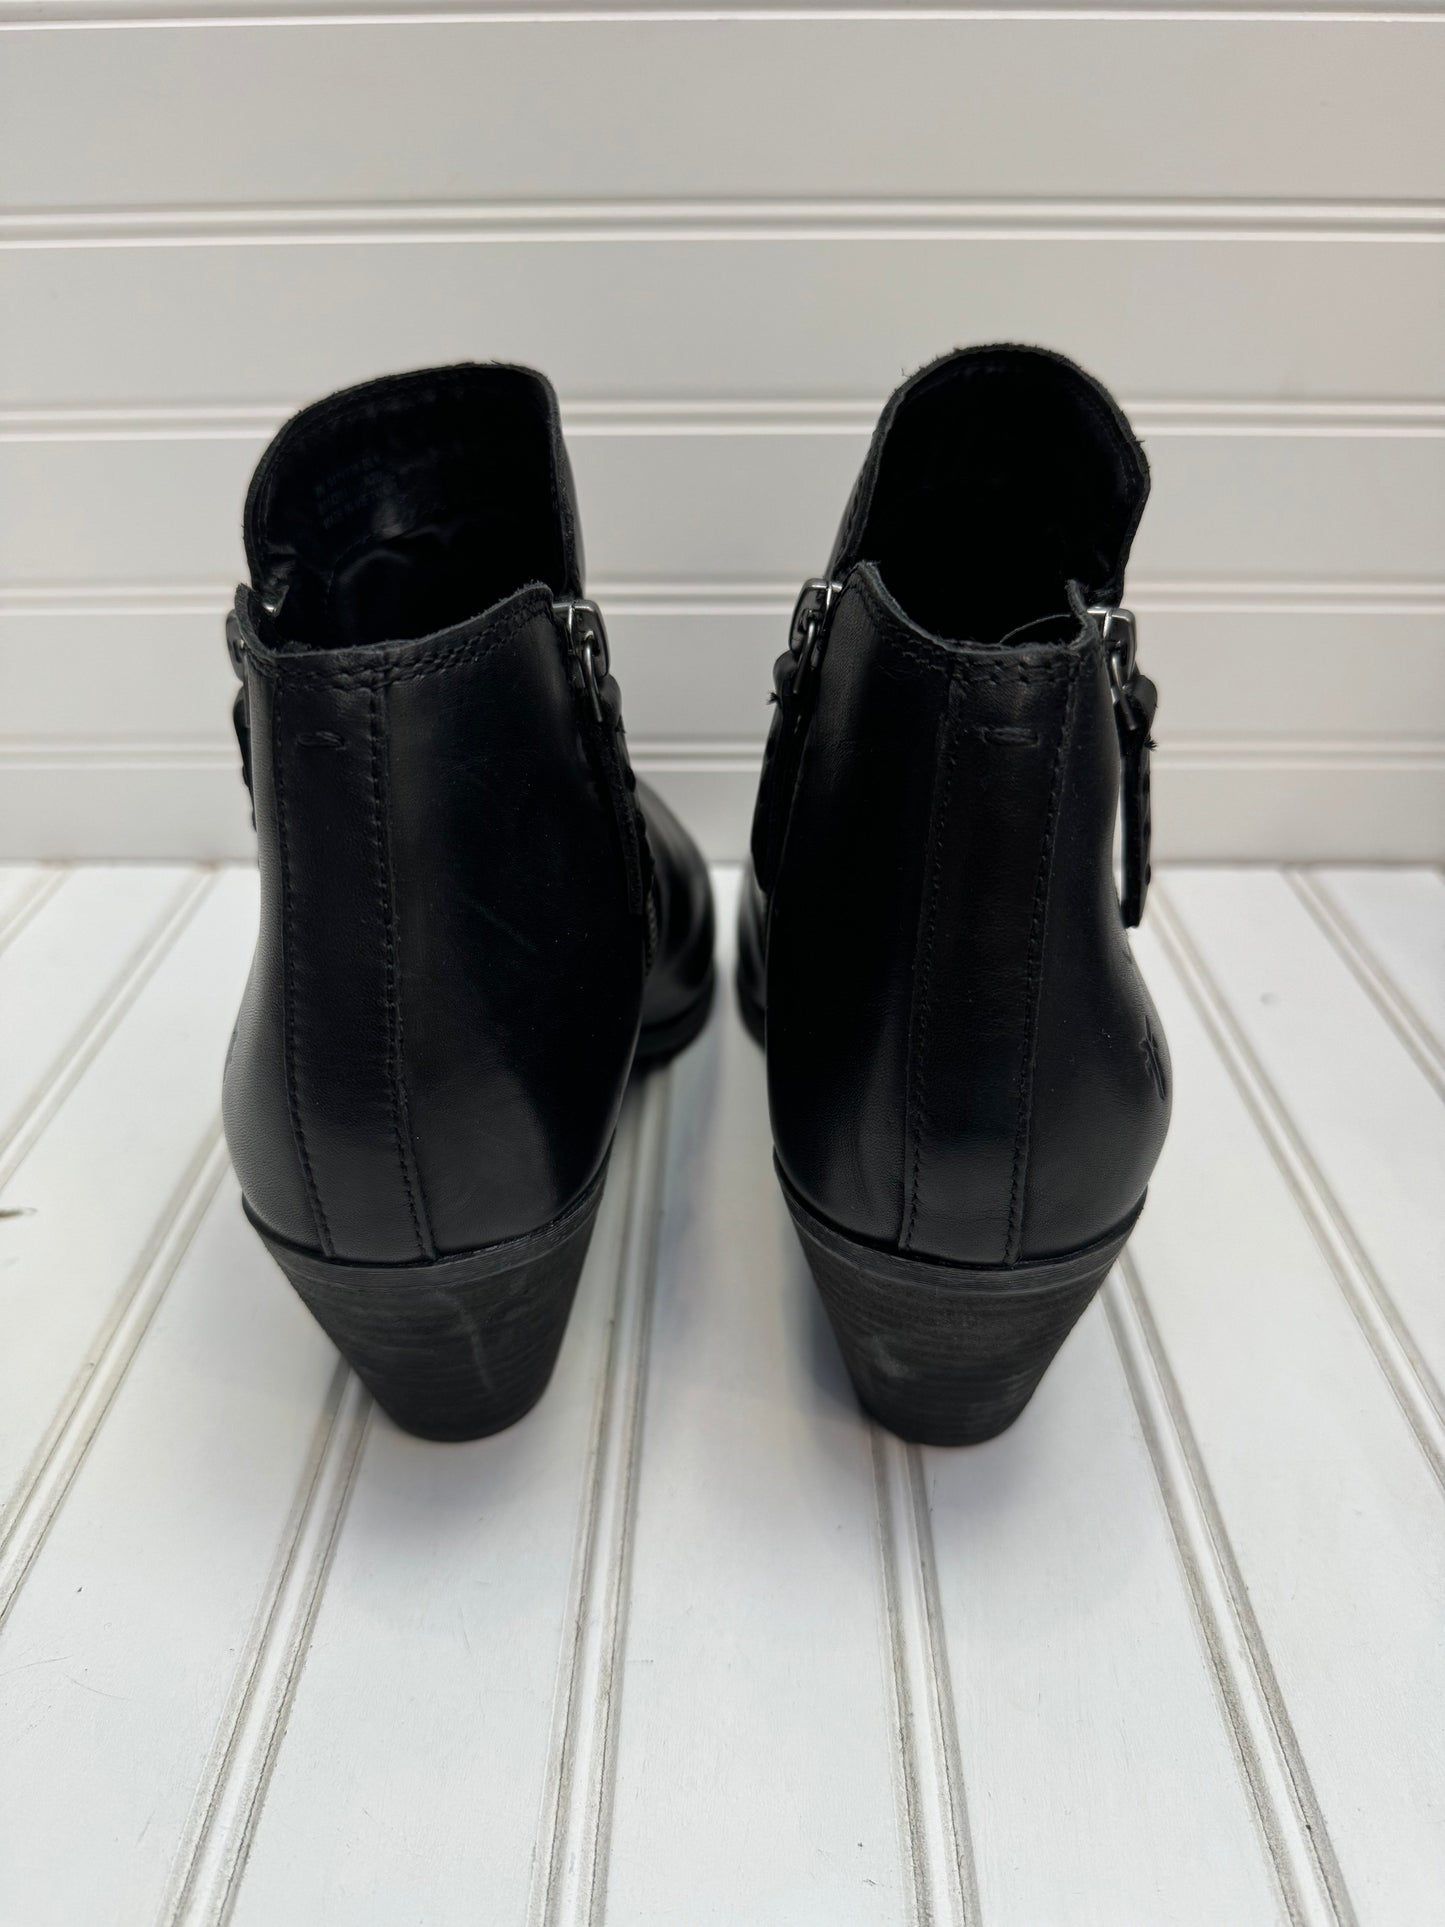 Black Boots Designer Frye, Size 9